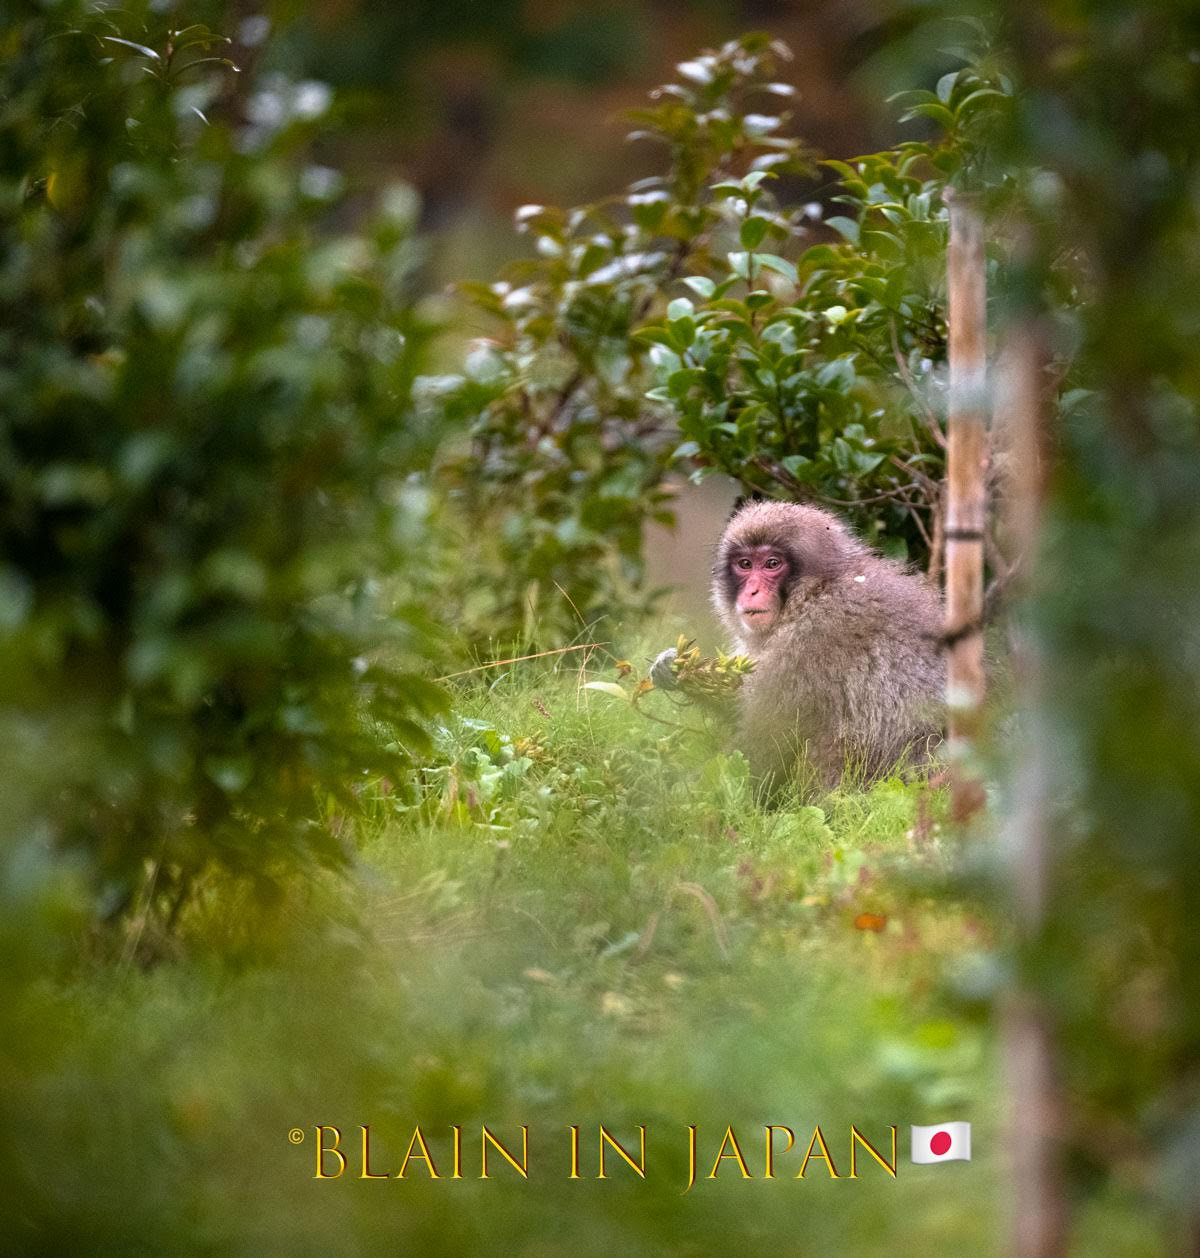 Snow Monkey Photo Tour Japan - Niigata, Nagano, or Anywhere Across